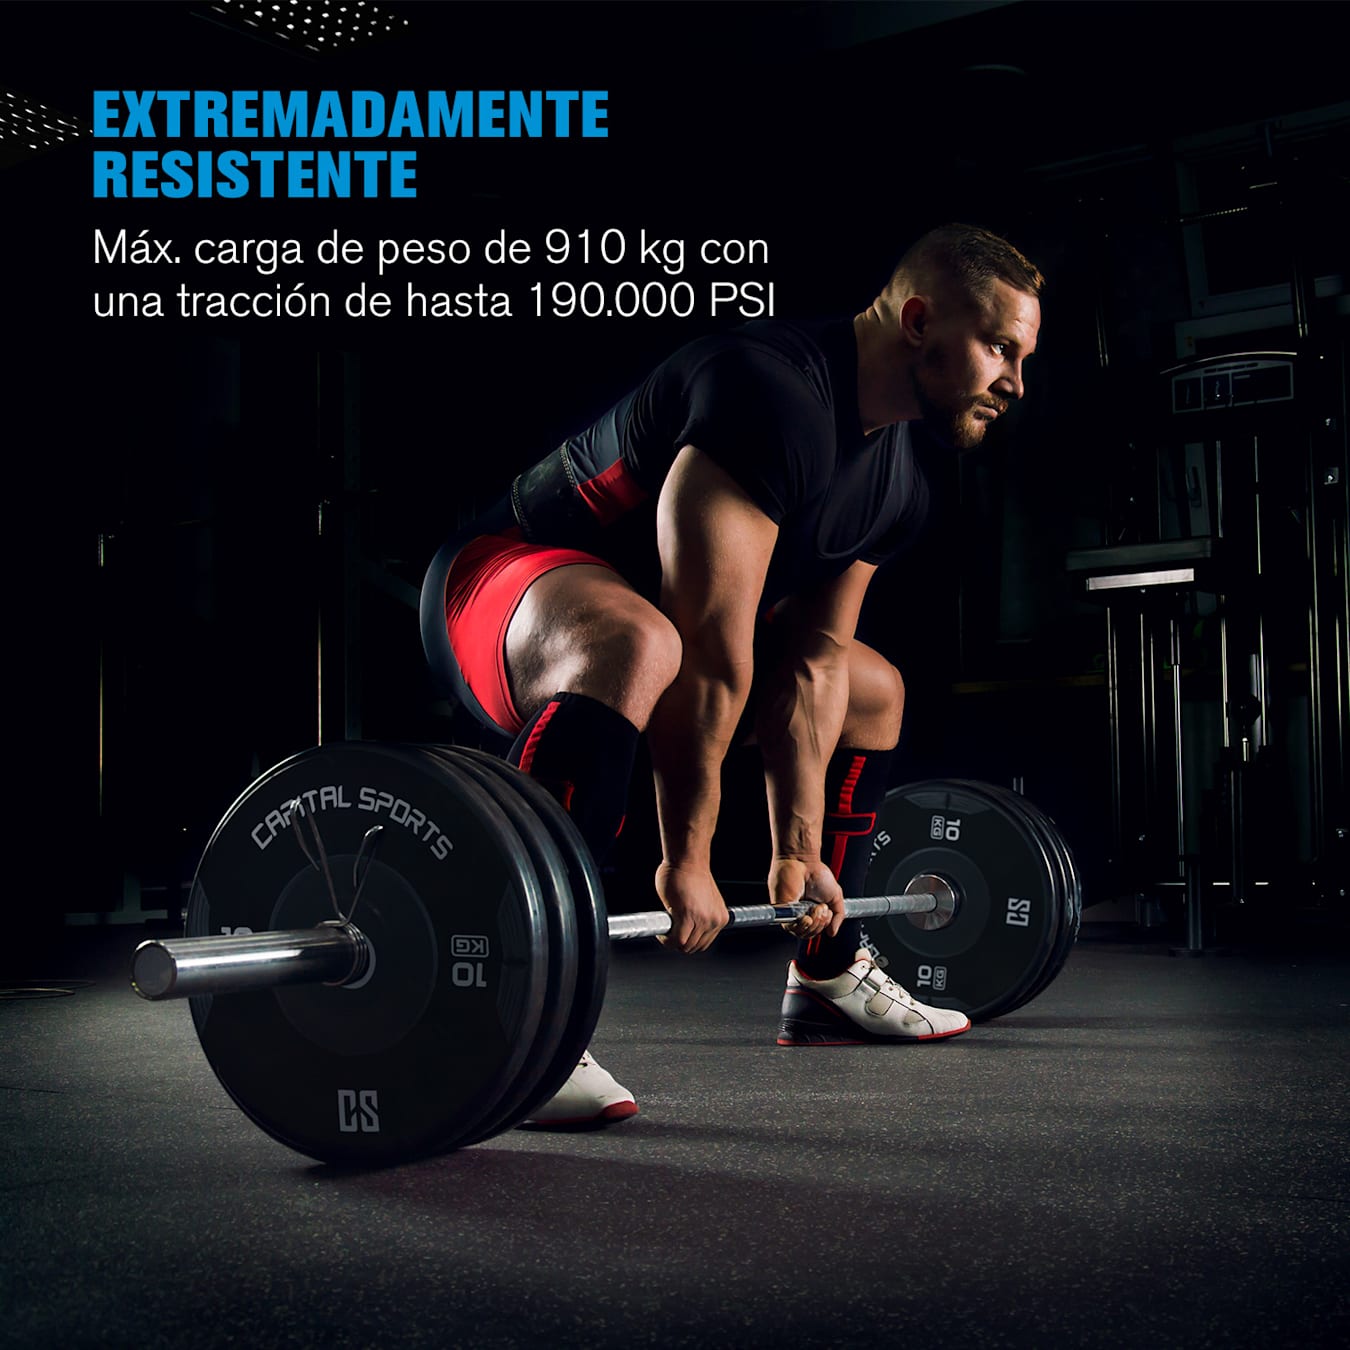 Barra olimpica 20 kg halterofilia cross training musculación diámetro 50 mm